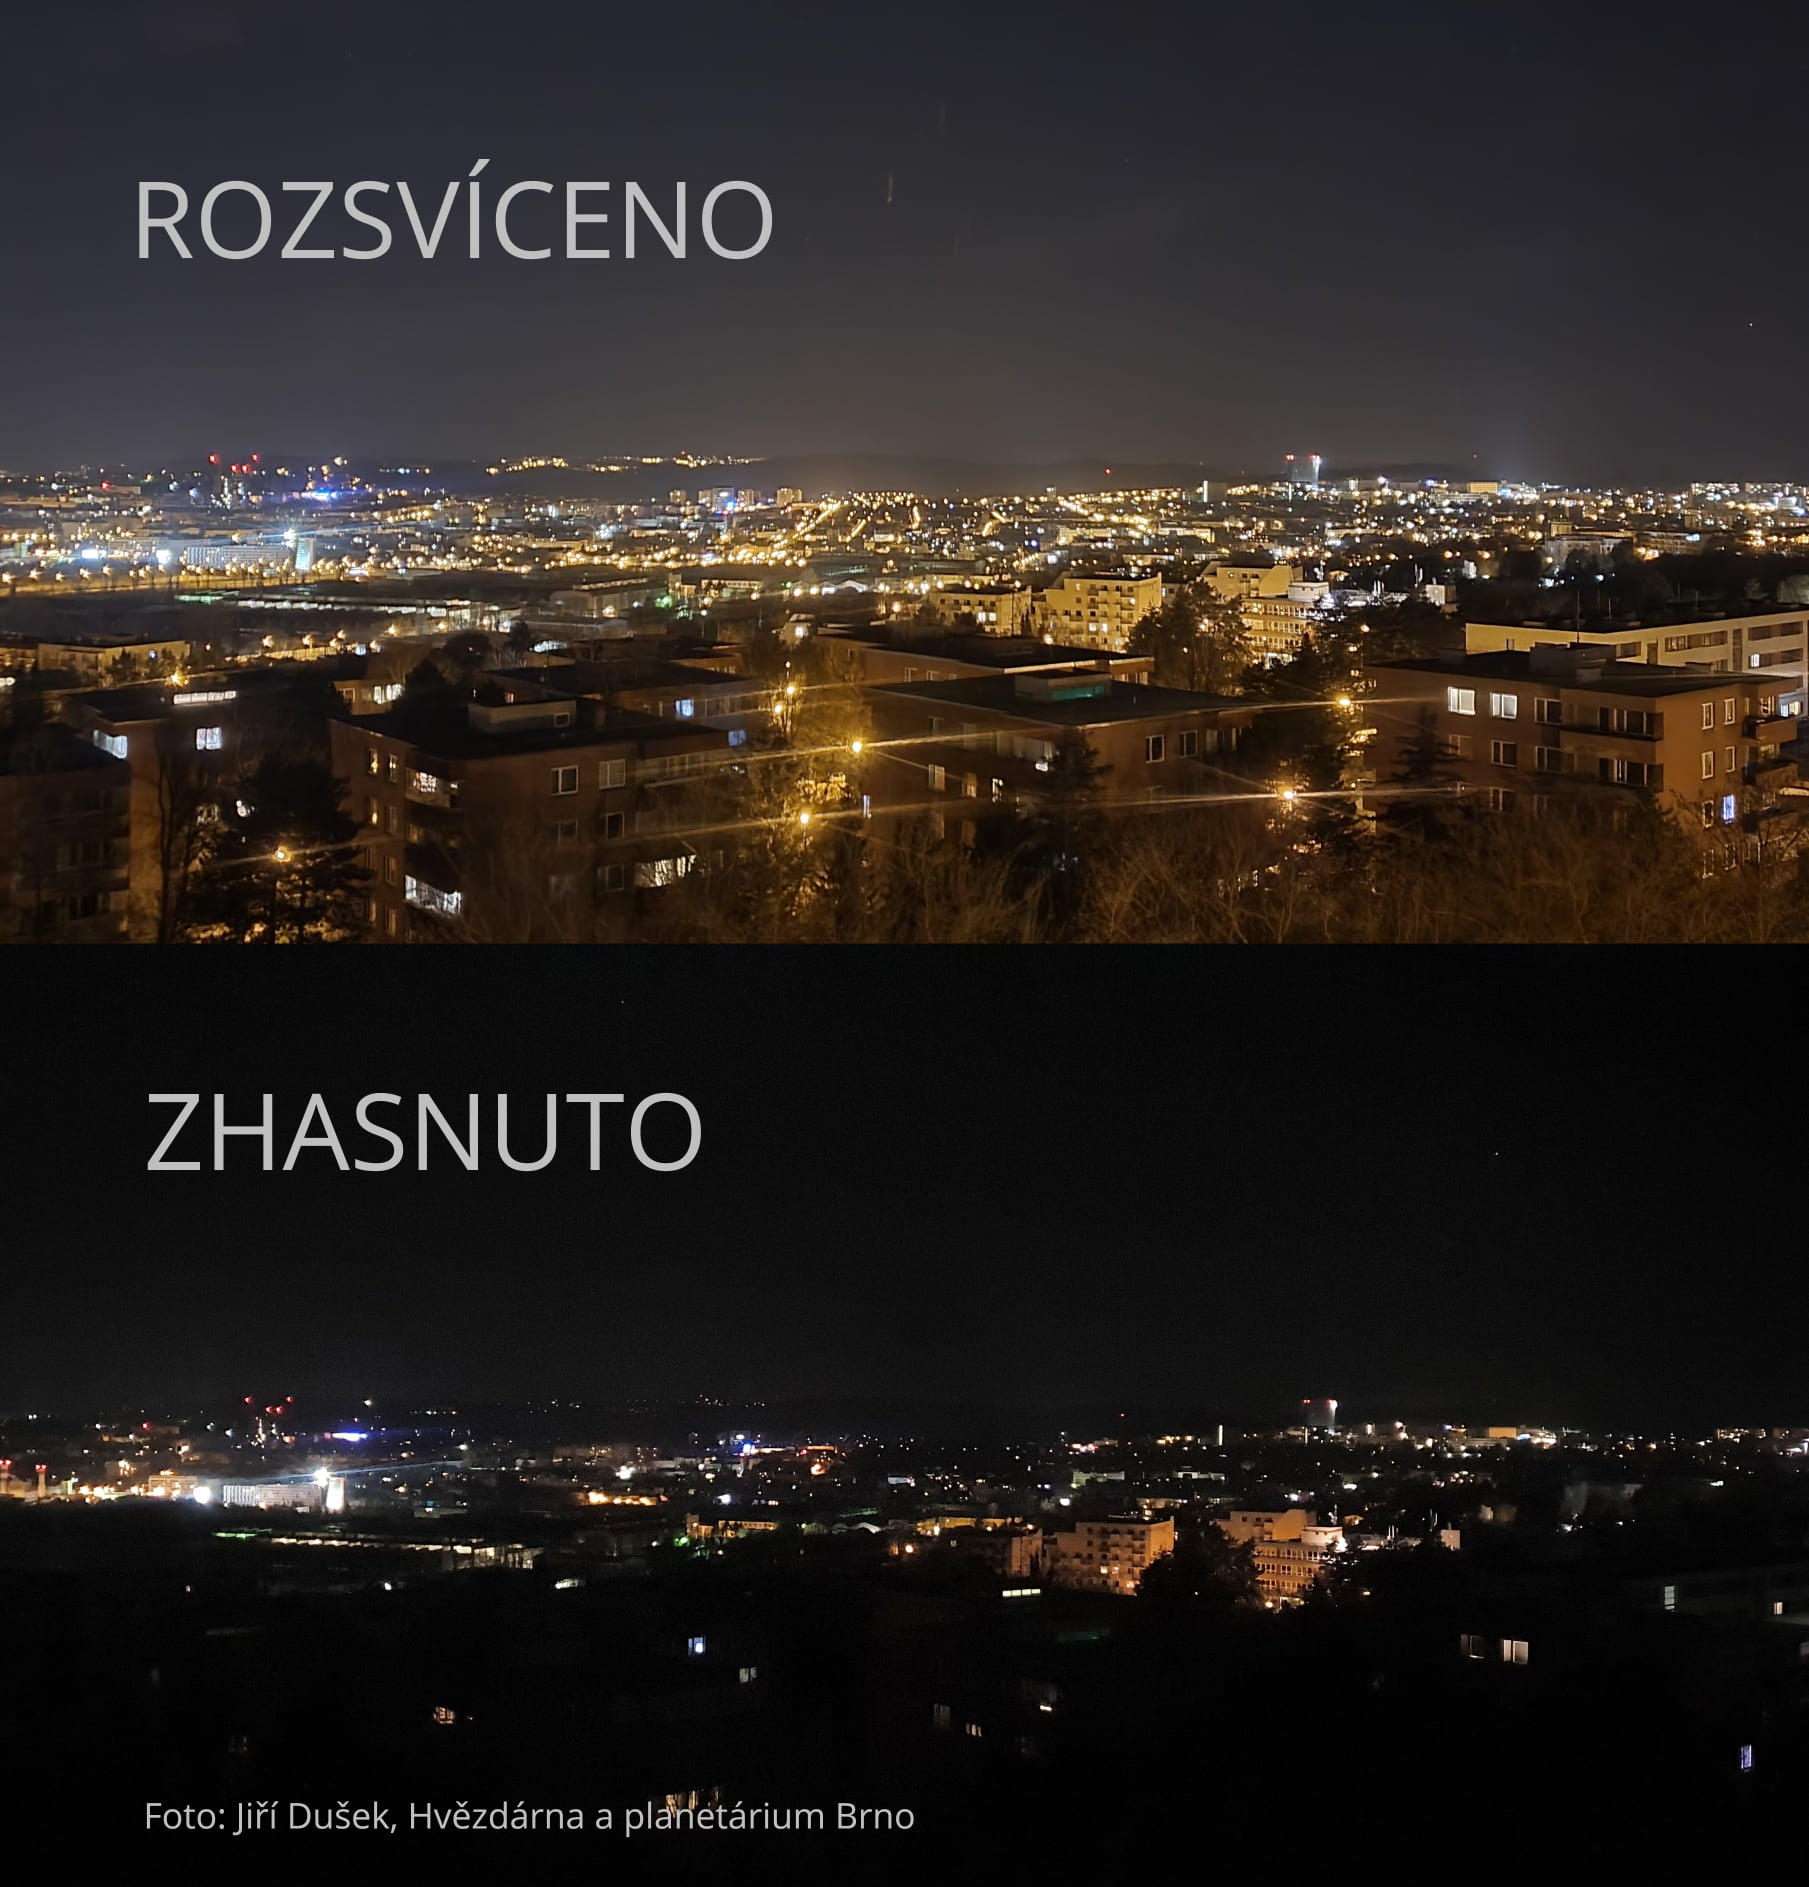 Srovnání roszvícené a zhasnuté veřejné osvětlení Brna. Foto: Jiří Dušek